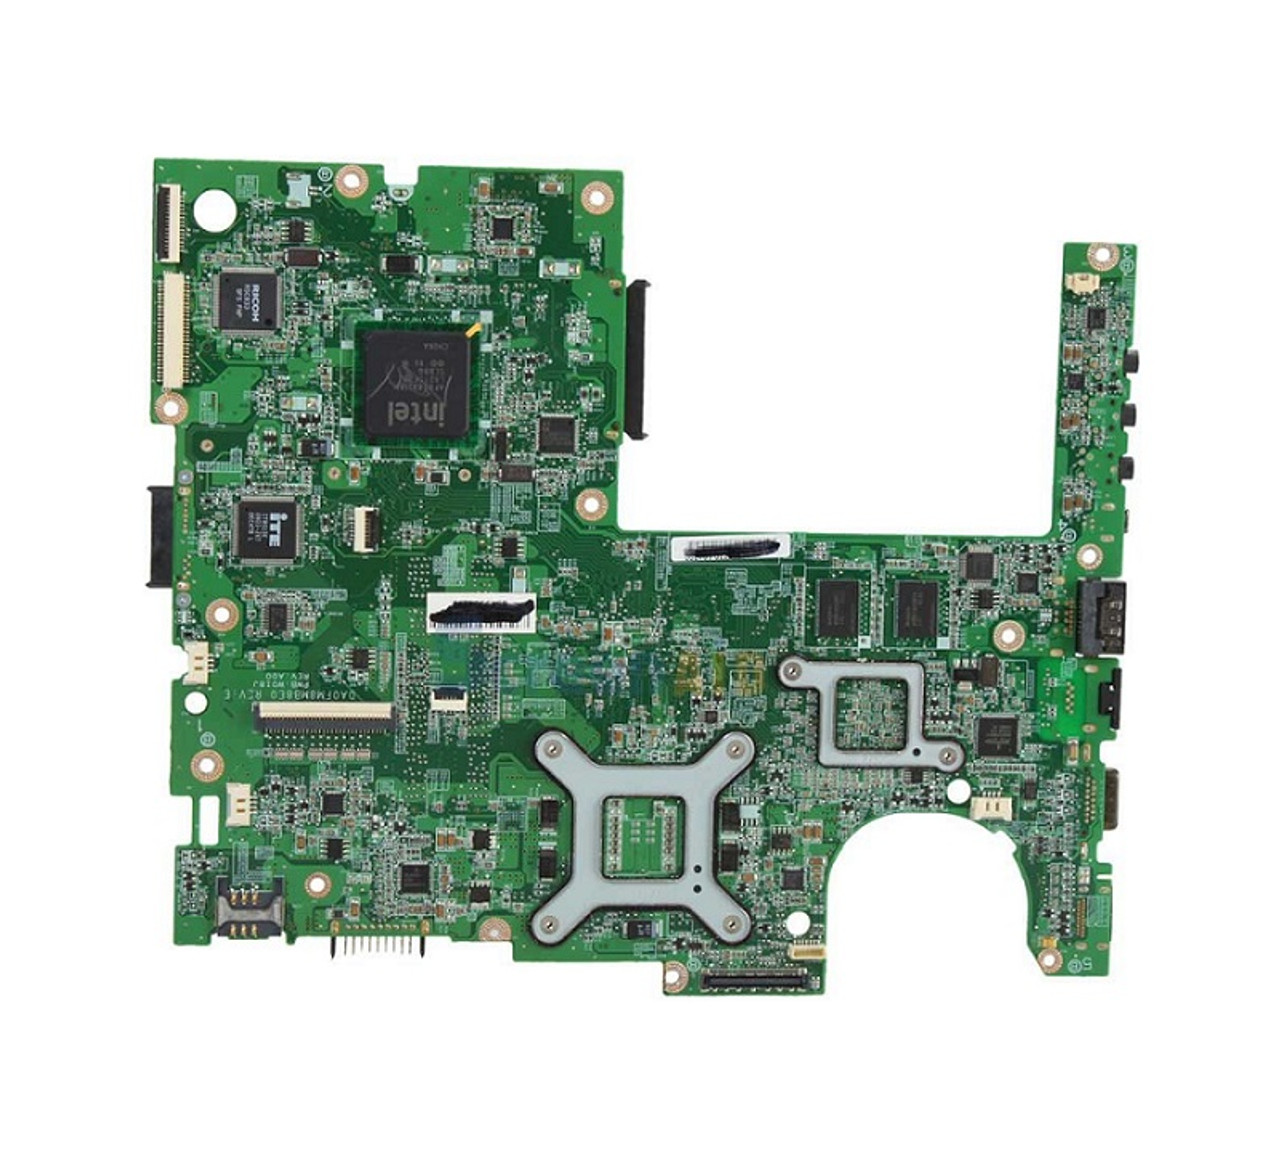 60-NY8MB1200-B06 - Asus G73jh Gaming Laptop System Board Socket-989